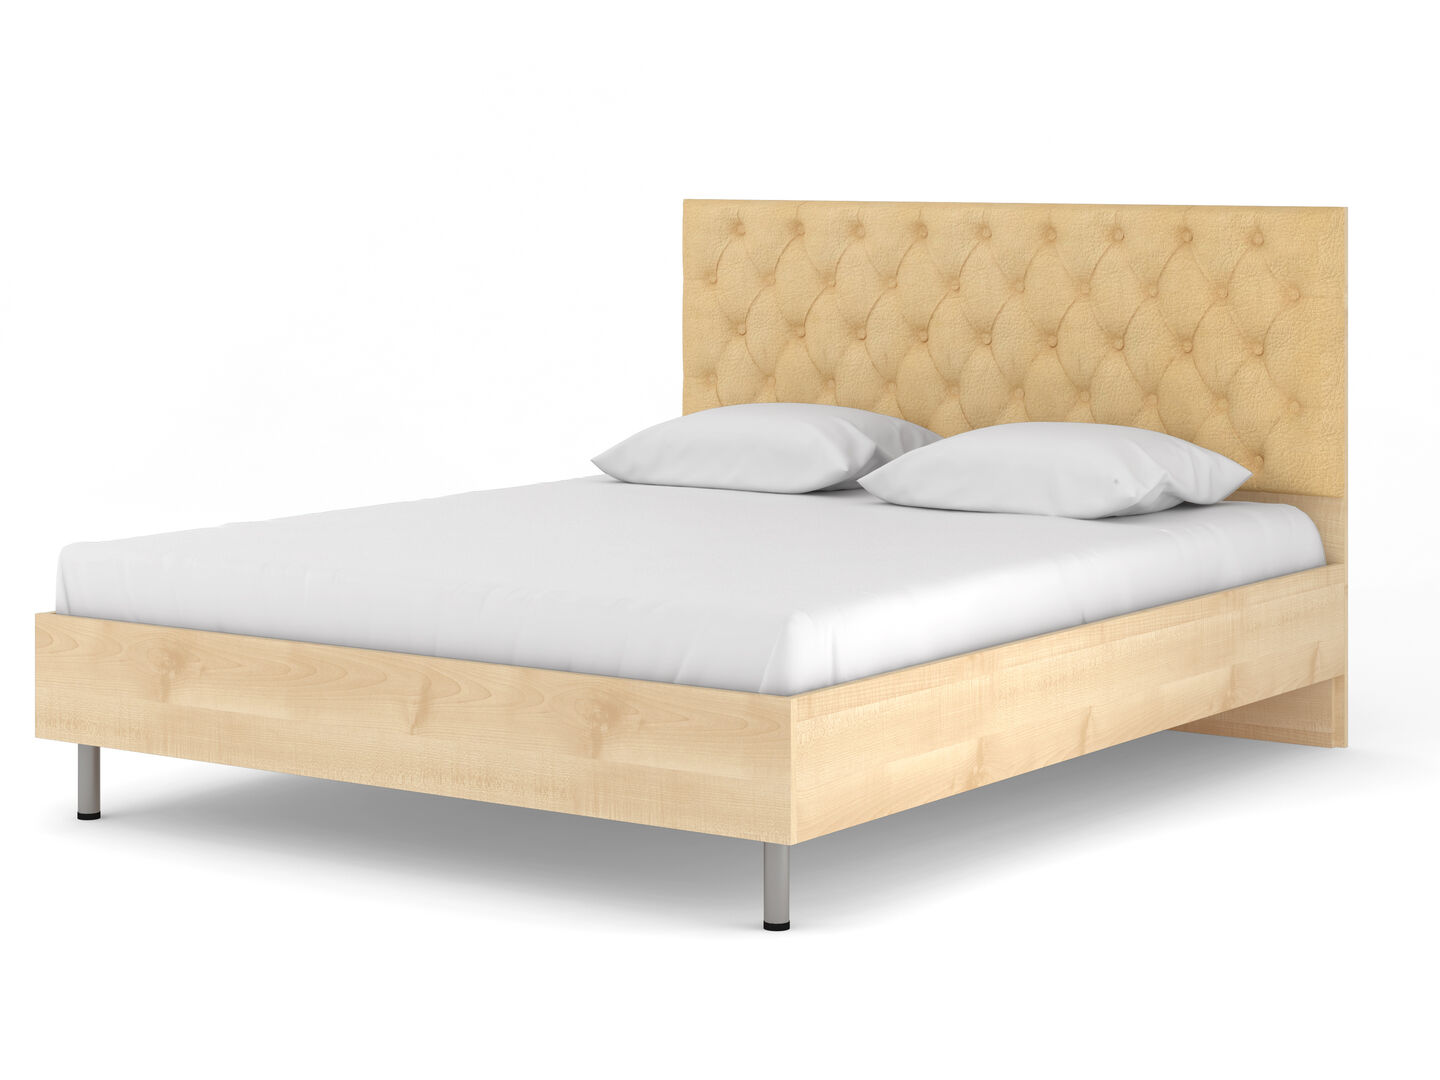 Кровать двуспальная с мягким изголовьем фабрики Стиль Луиза 3КС